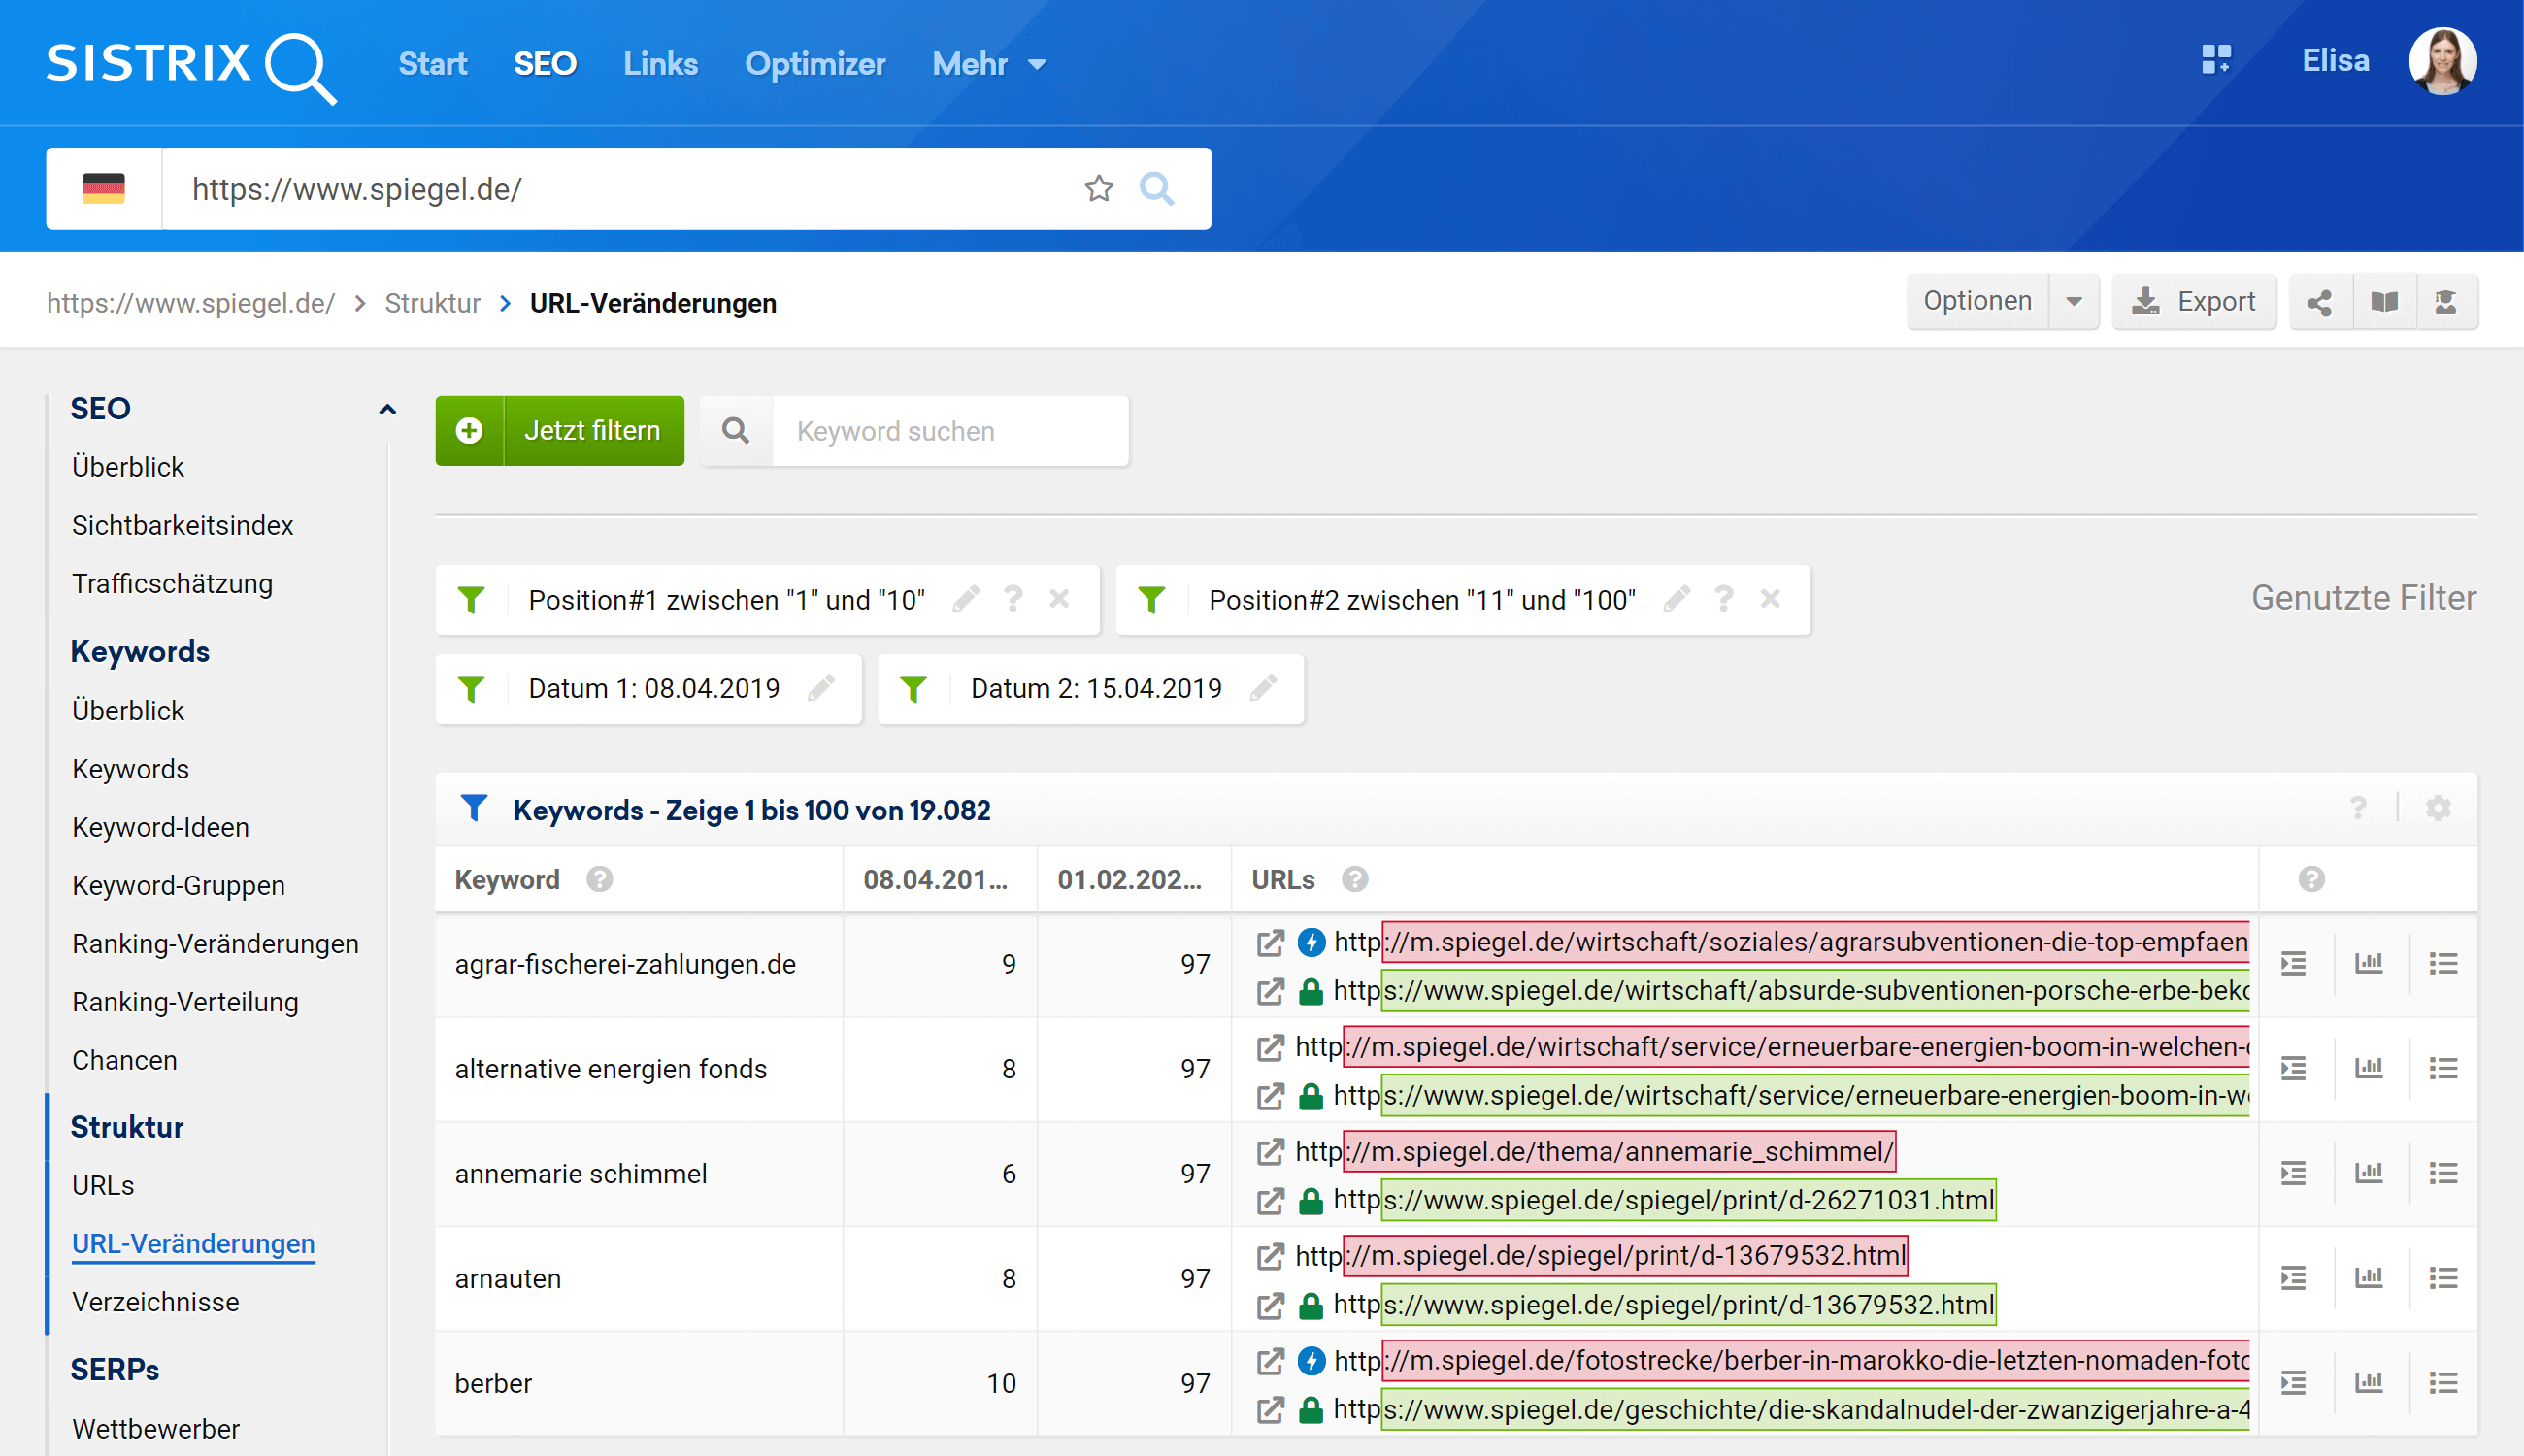 Ansicht der URL-Veränderungen in der SISTRIX Toolbox für die Filter "Position#1 zwischen 1 und 10", "Position#2 zwischen 11 und 100" für die beiden Datenpunkte vom 08.01.2019 und den 15.04.2019.